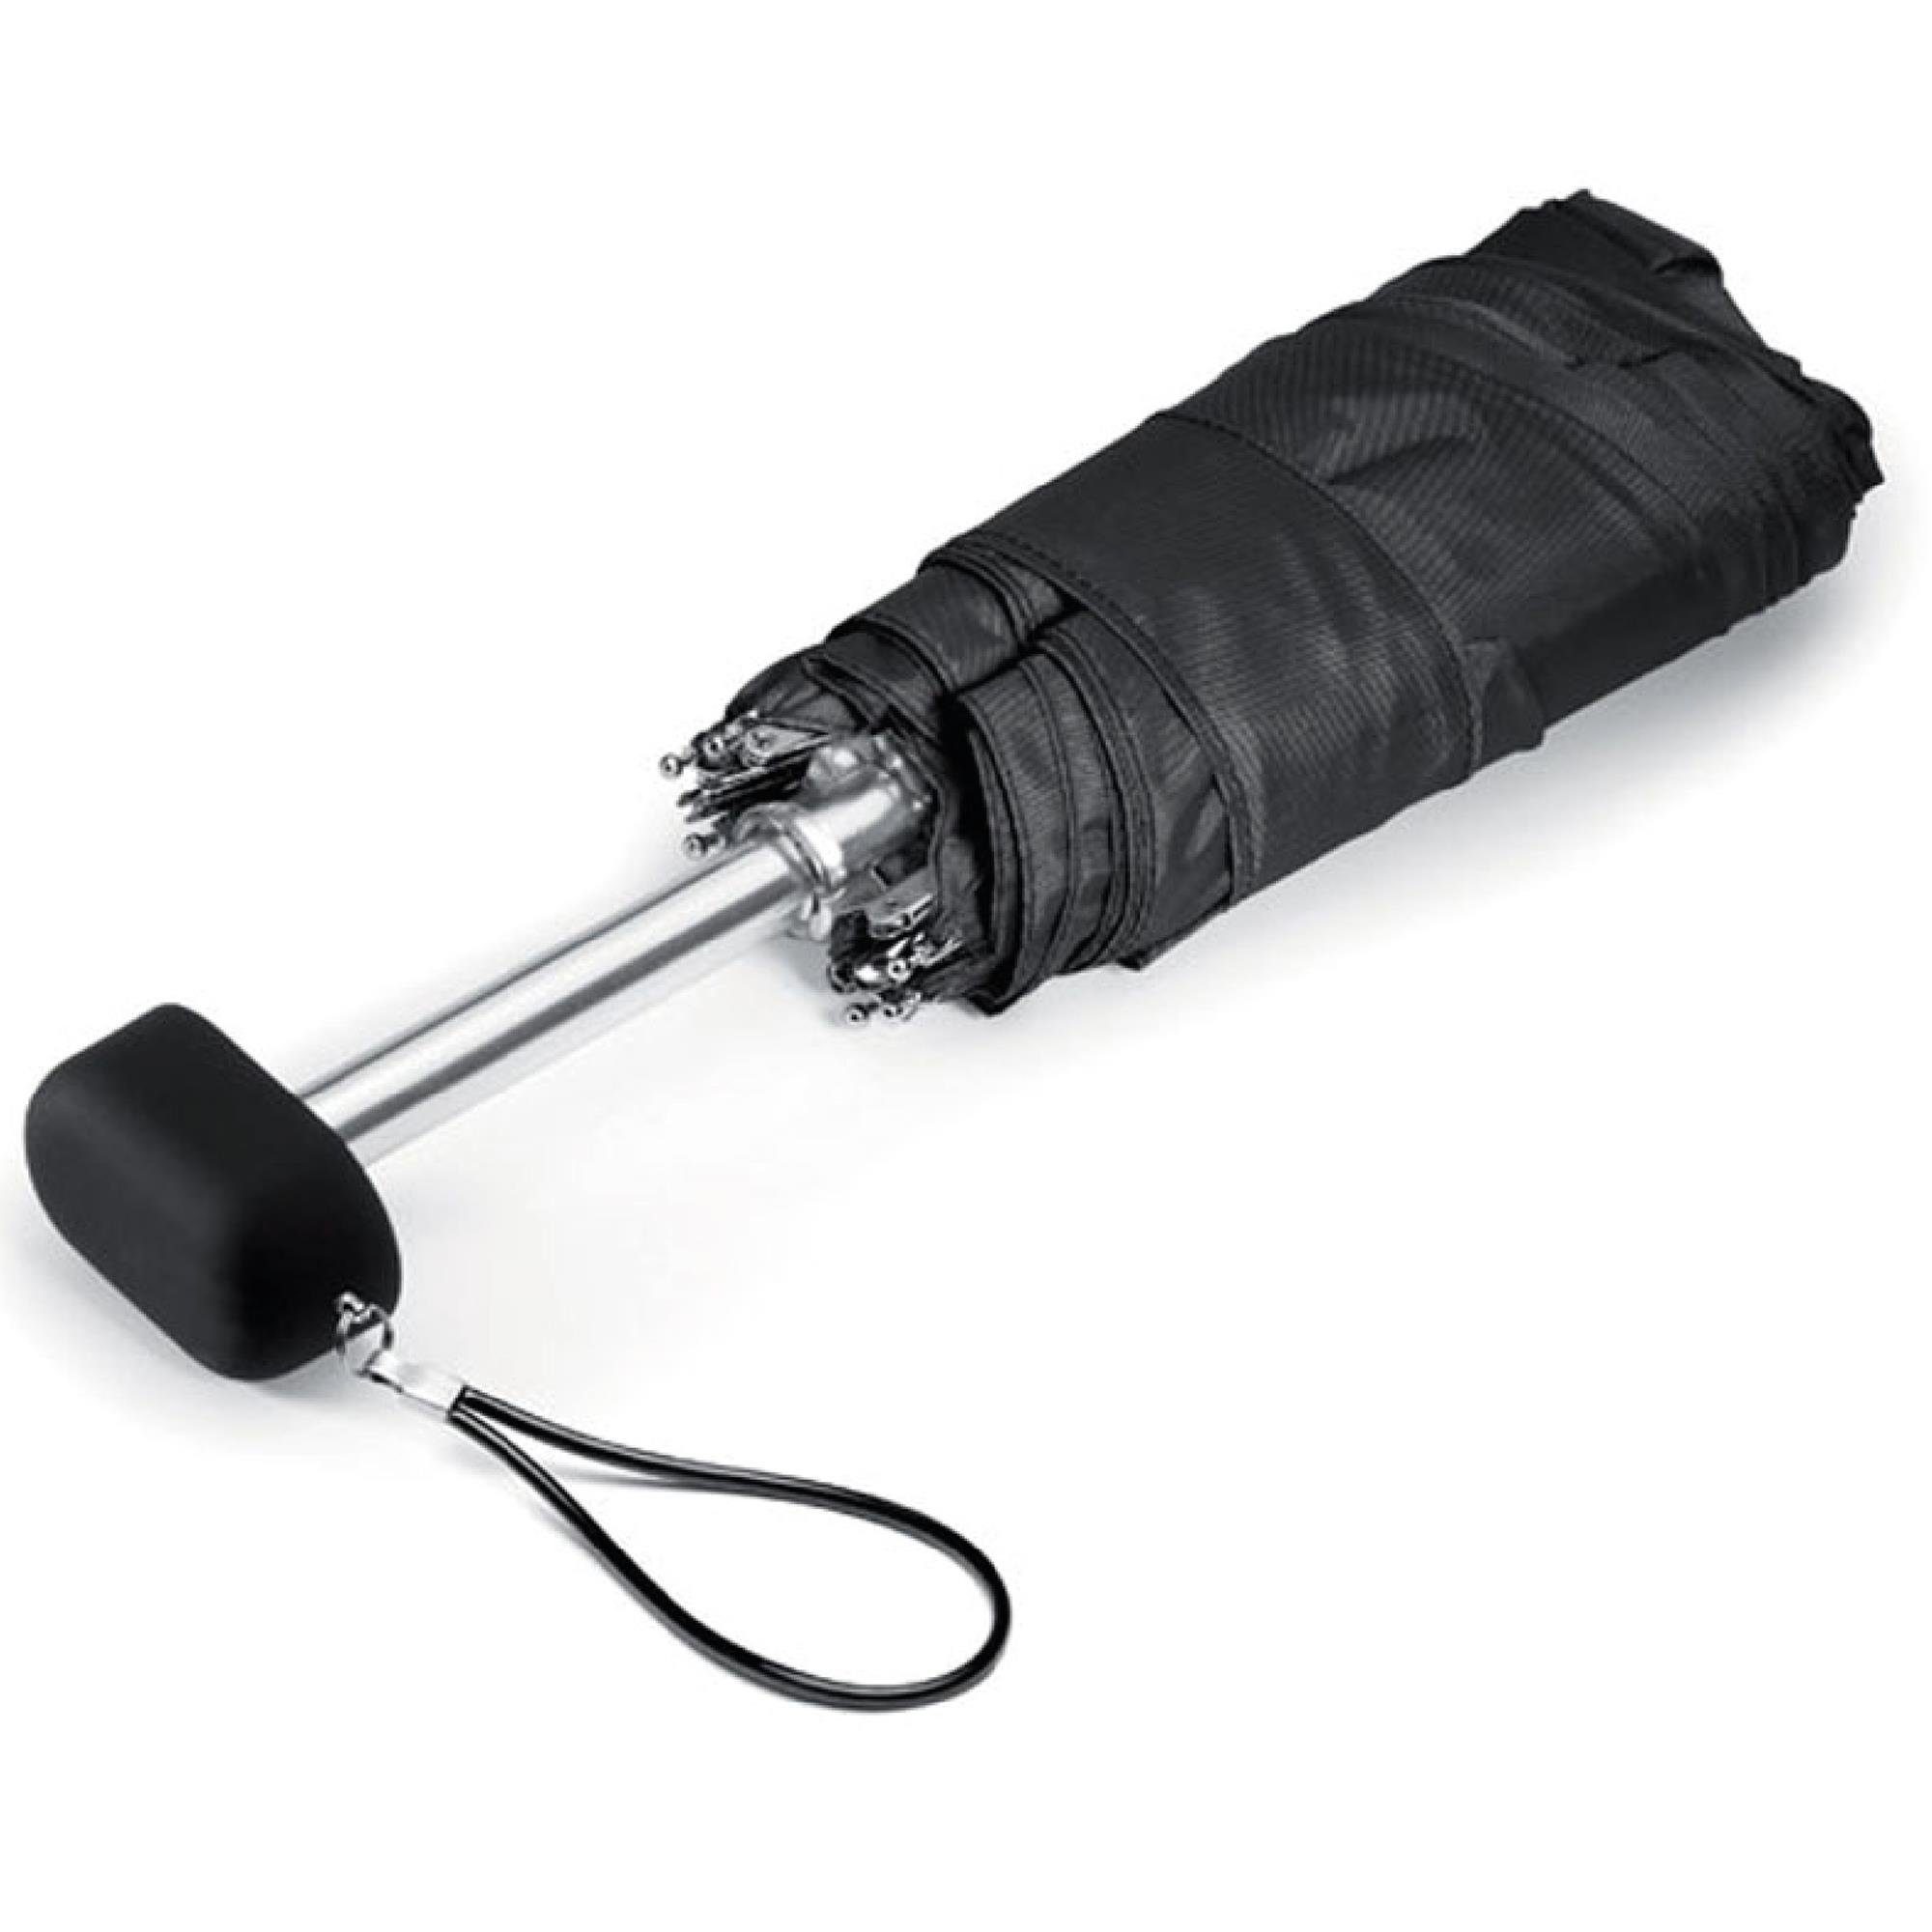 Taschenregenschirm, Taschenregenschirm und geschlossen stabil, ultraleicht, windfest Bestlivings Regenschirm Mini schnelltrocknend 19cm,